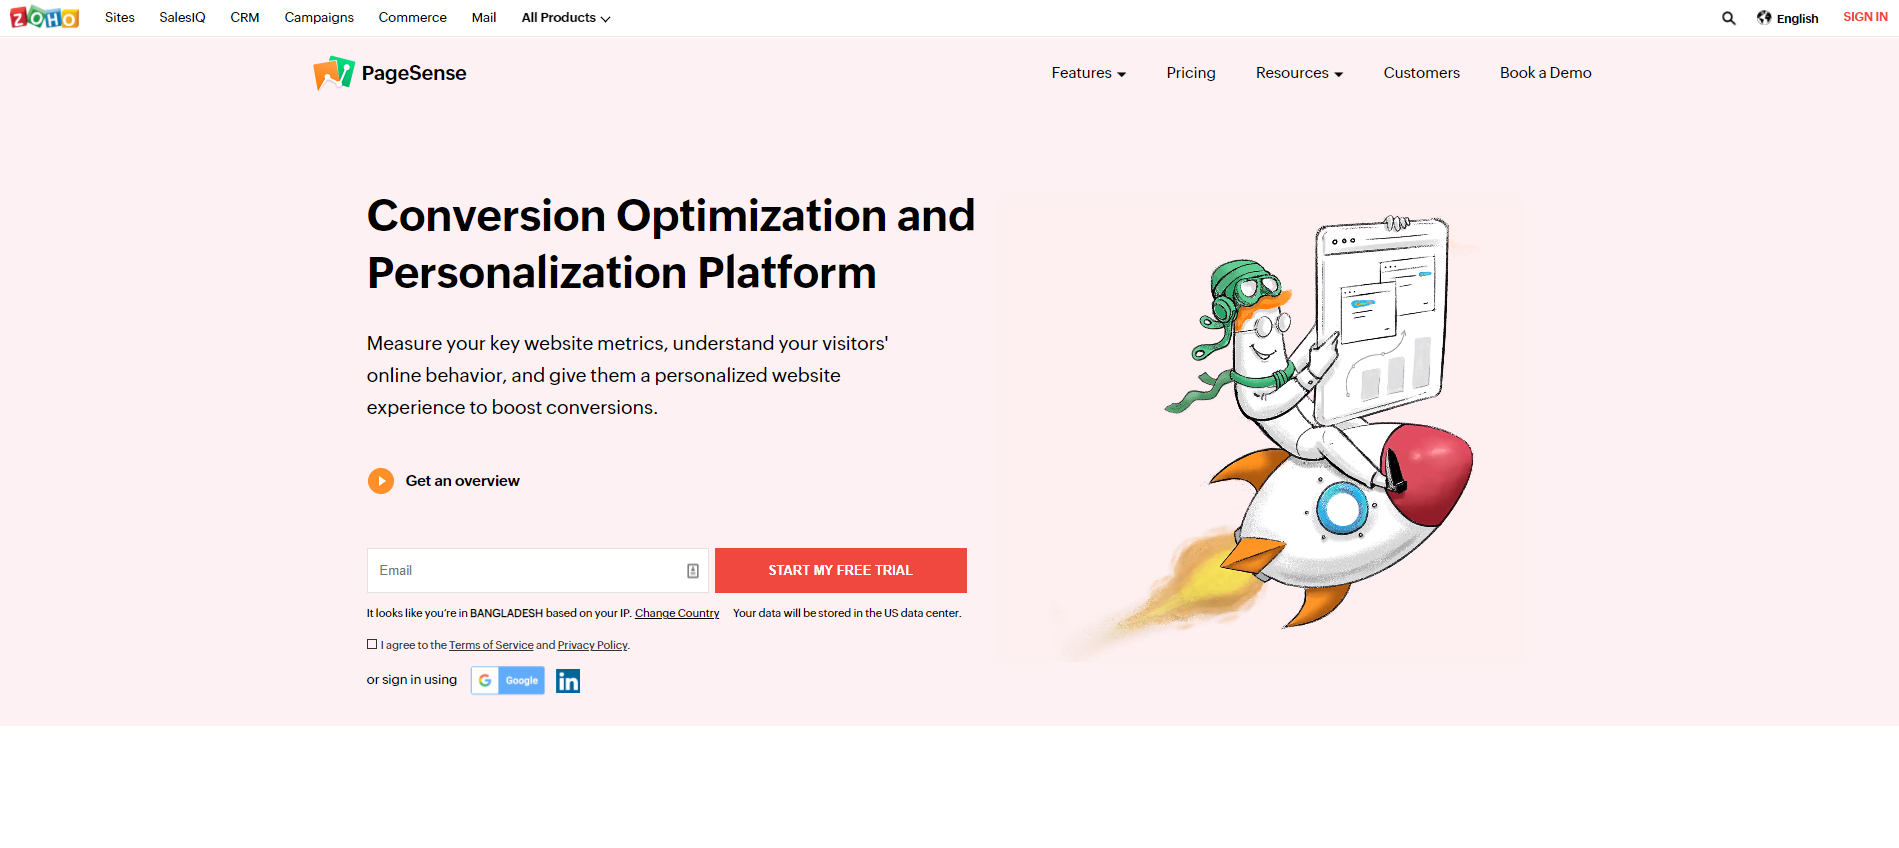 Conversion Optimization and Personalization Platform Zoho PageSense